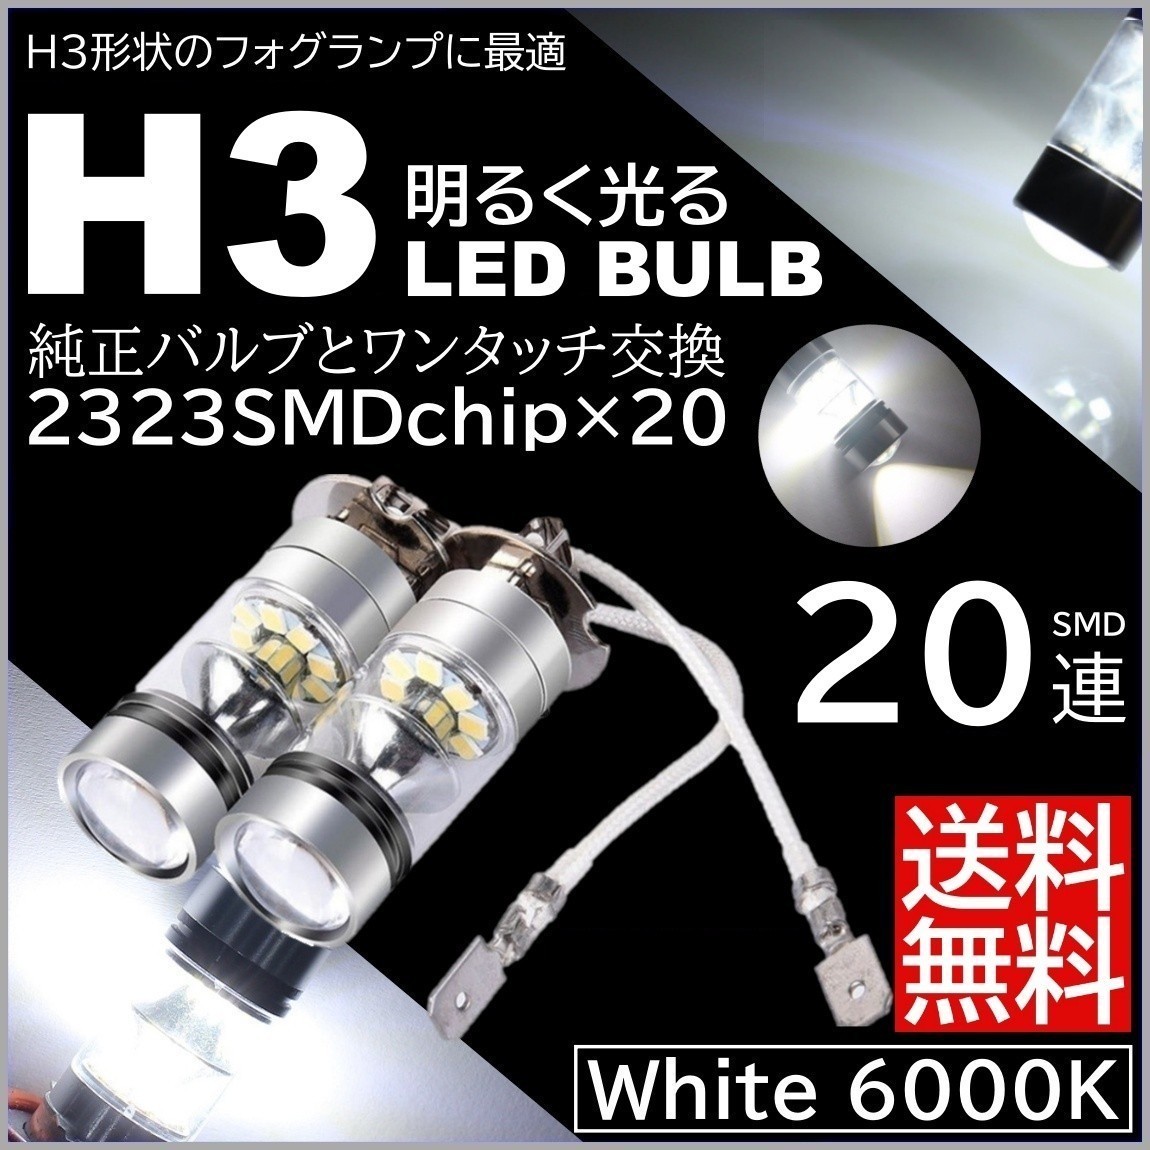 ◆送料無料◆ プロジェクター H3 6000K 12V LEDバルブ 100W LEDフォグランプ 20SMD ホワイト LEDフォグ 白 ホワイト_画像1